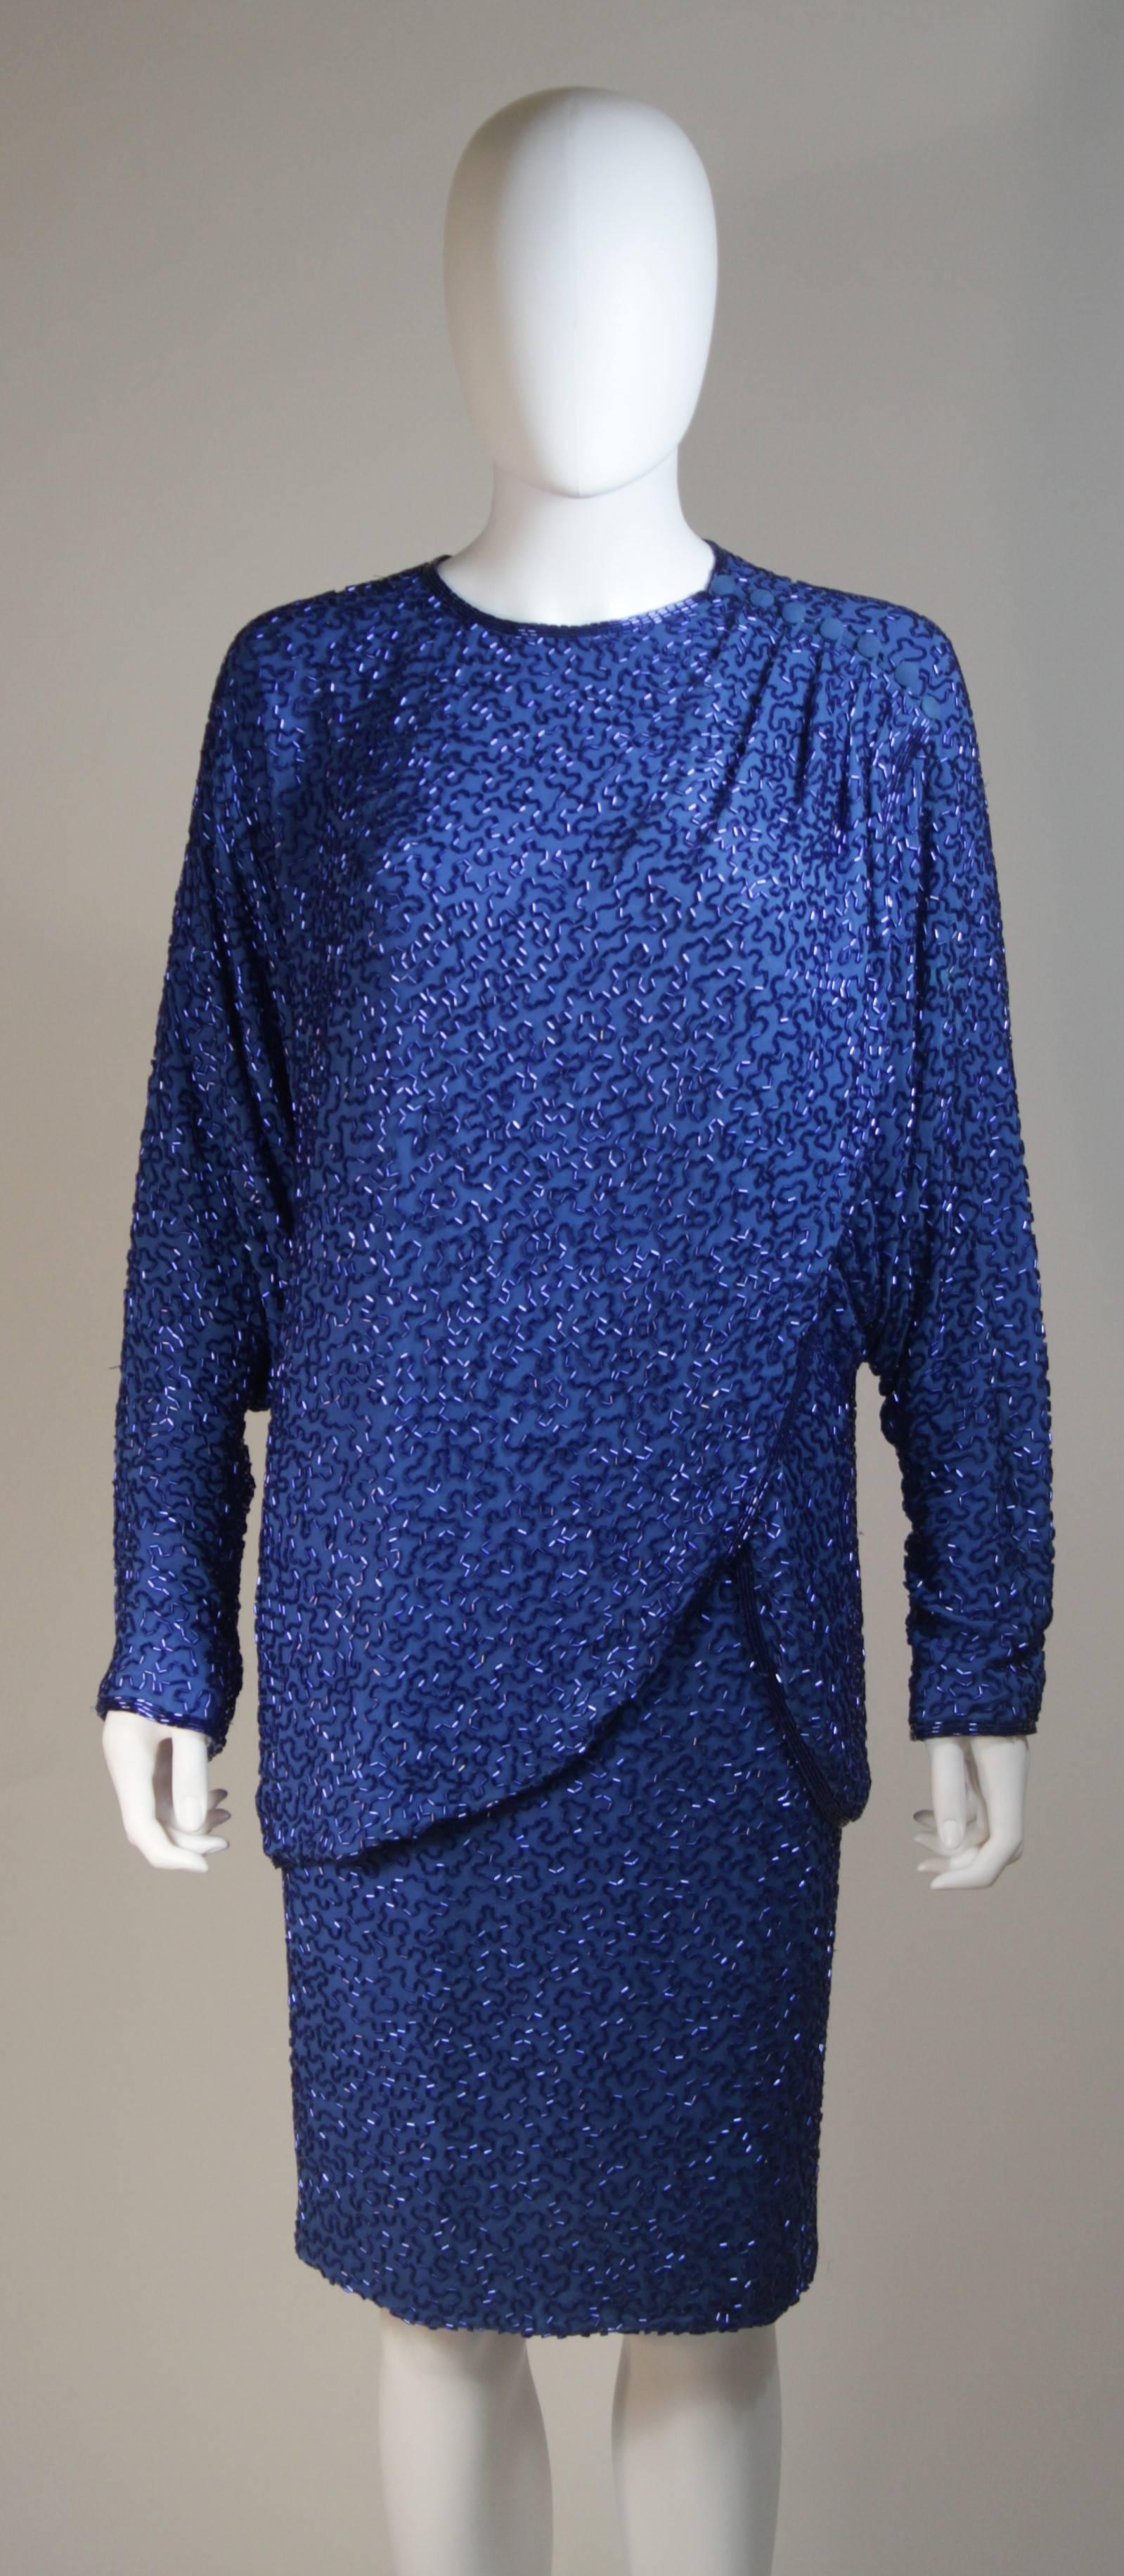 Cet ensemble jupe Stephen Yearik est composé d'une soie perlée dans une teinte bleue vibrante. Le haut a un design drapé et une fermeture à l'épaule. La jupe est une silhouette crayon classique avec une fermeture à glissière. En excellent état